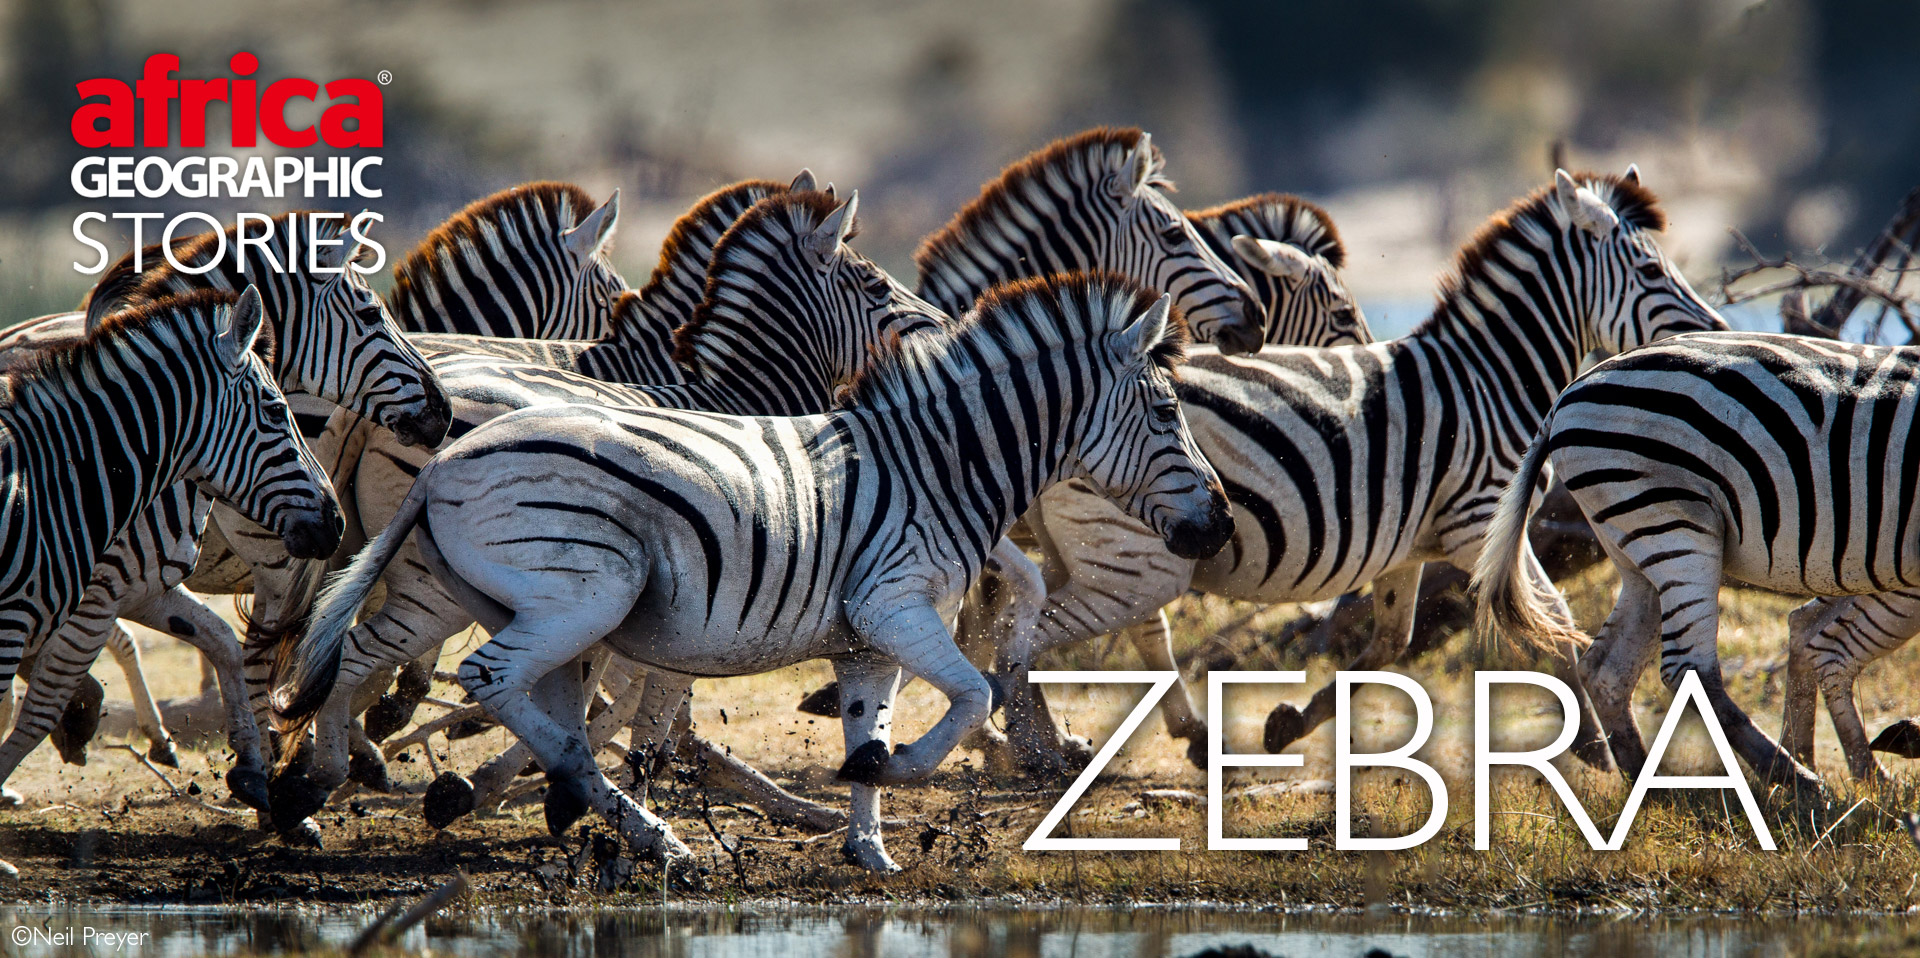 zebras in africa